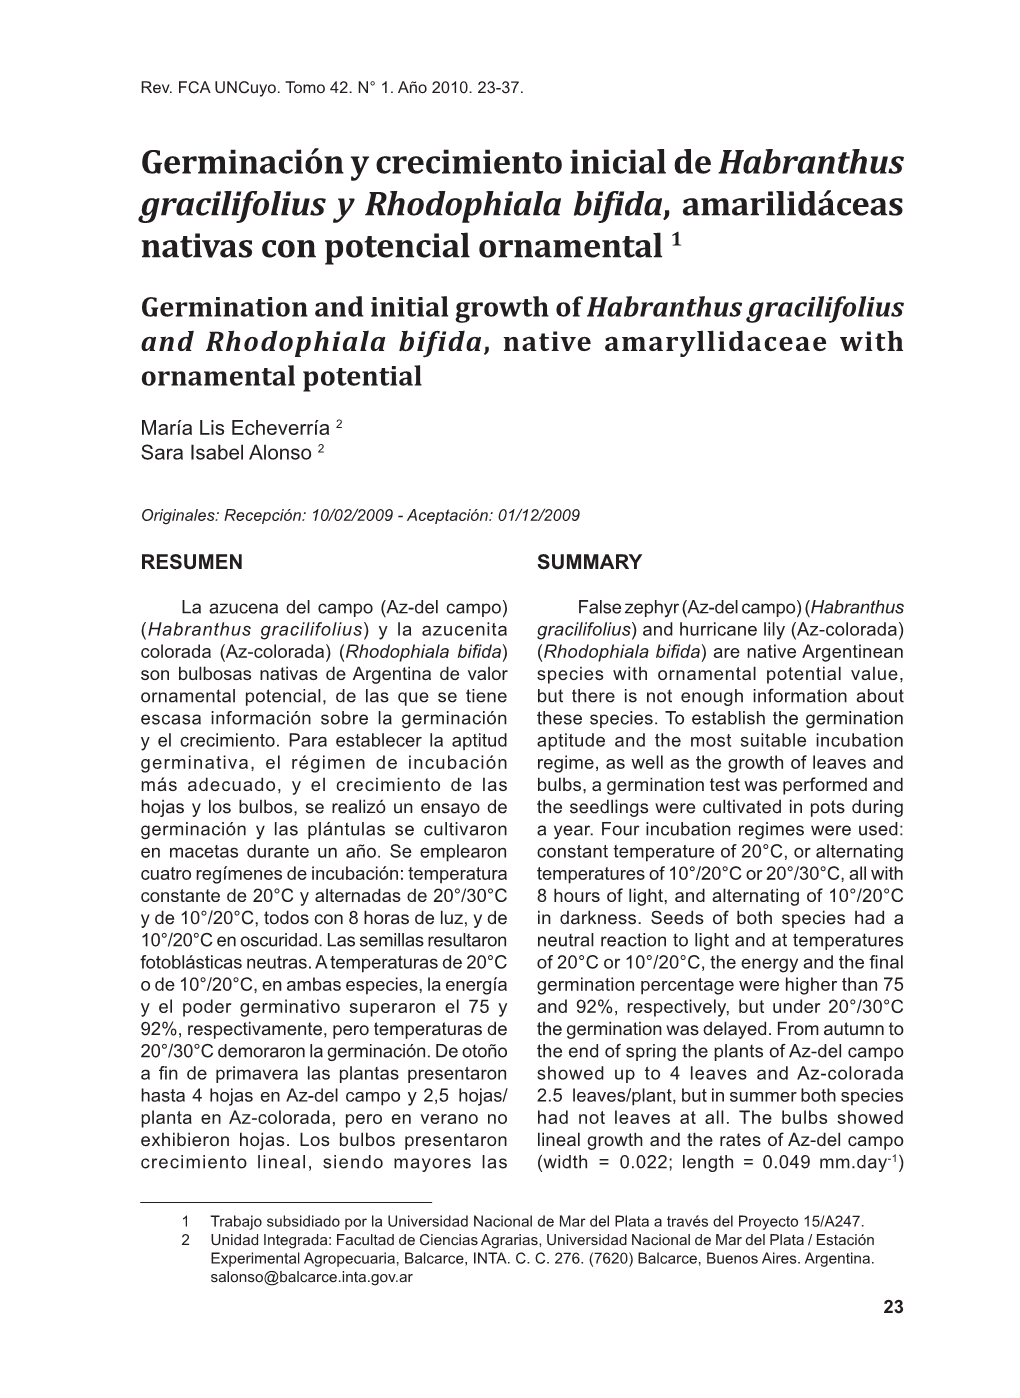 Germinación Y Crecimiento Inicial De Habranthus Gracilifolius Y Rhodophiala Bifida, Amarilidáceas Nativas Con Potencial Ornamental 1